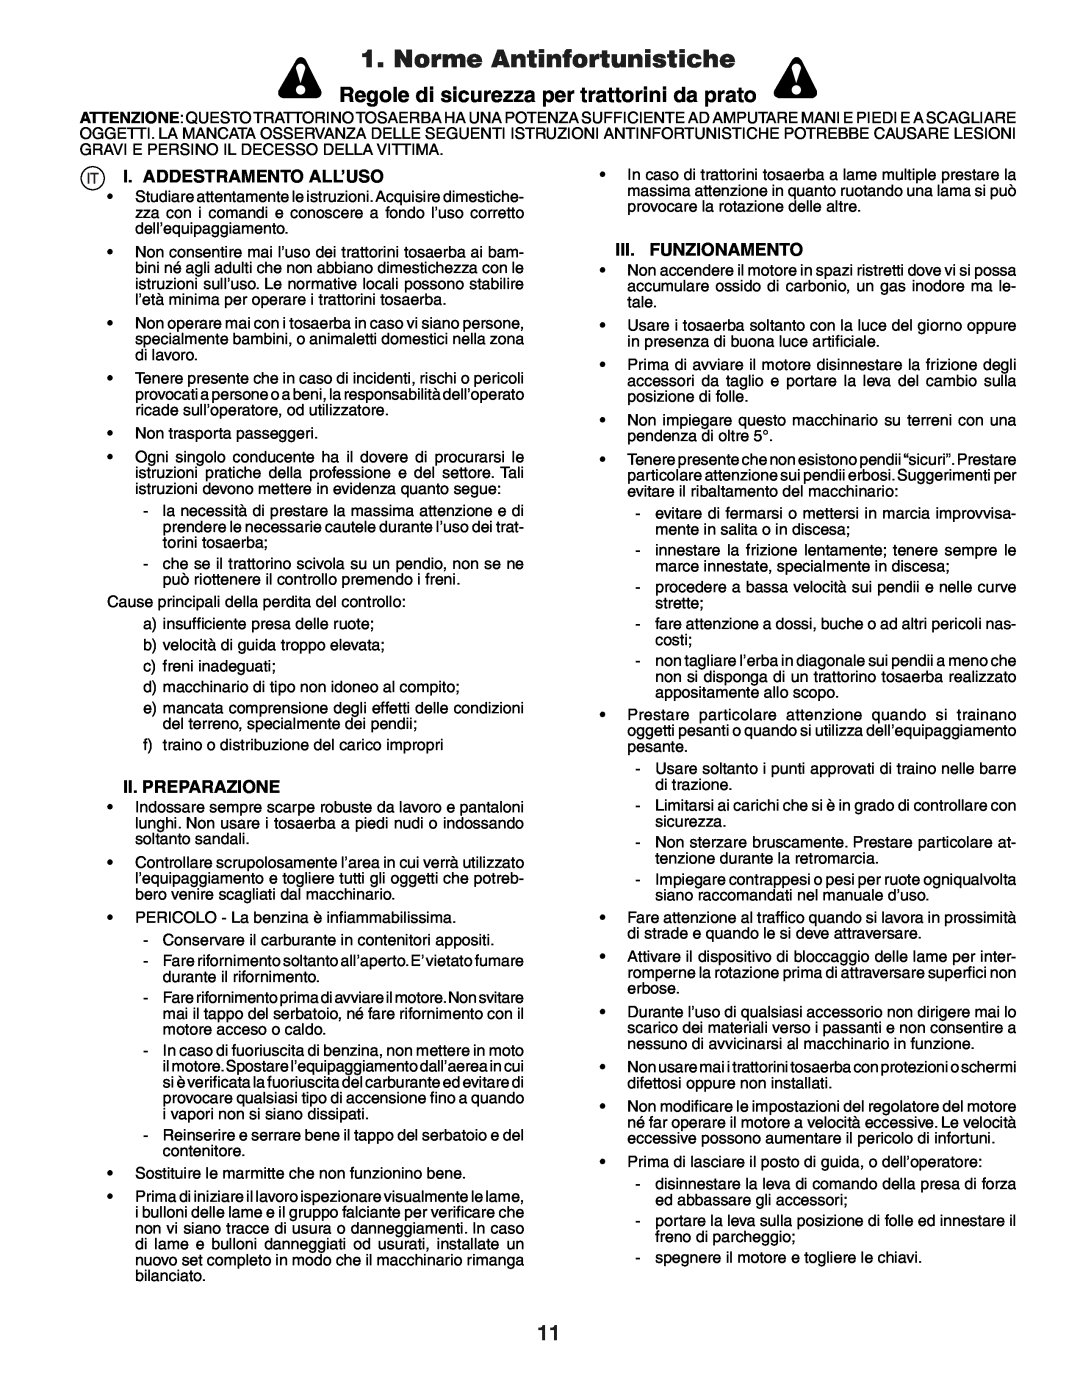 Husqvarna YTH151 Norme Antinfortunistiche, Regole di sicurezza per trattorini da prato, I. Addestramento All’Uso 